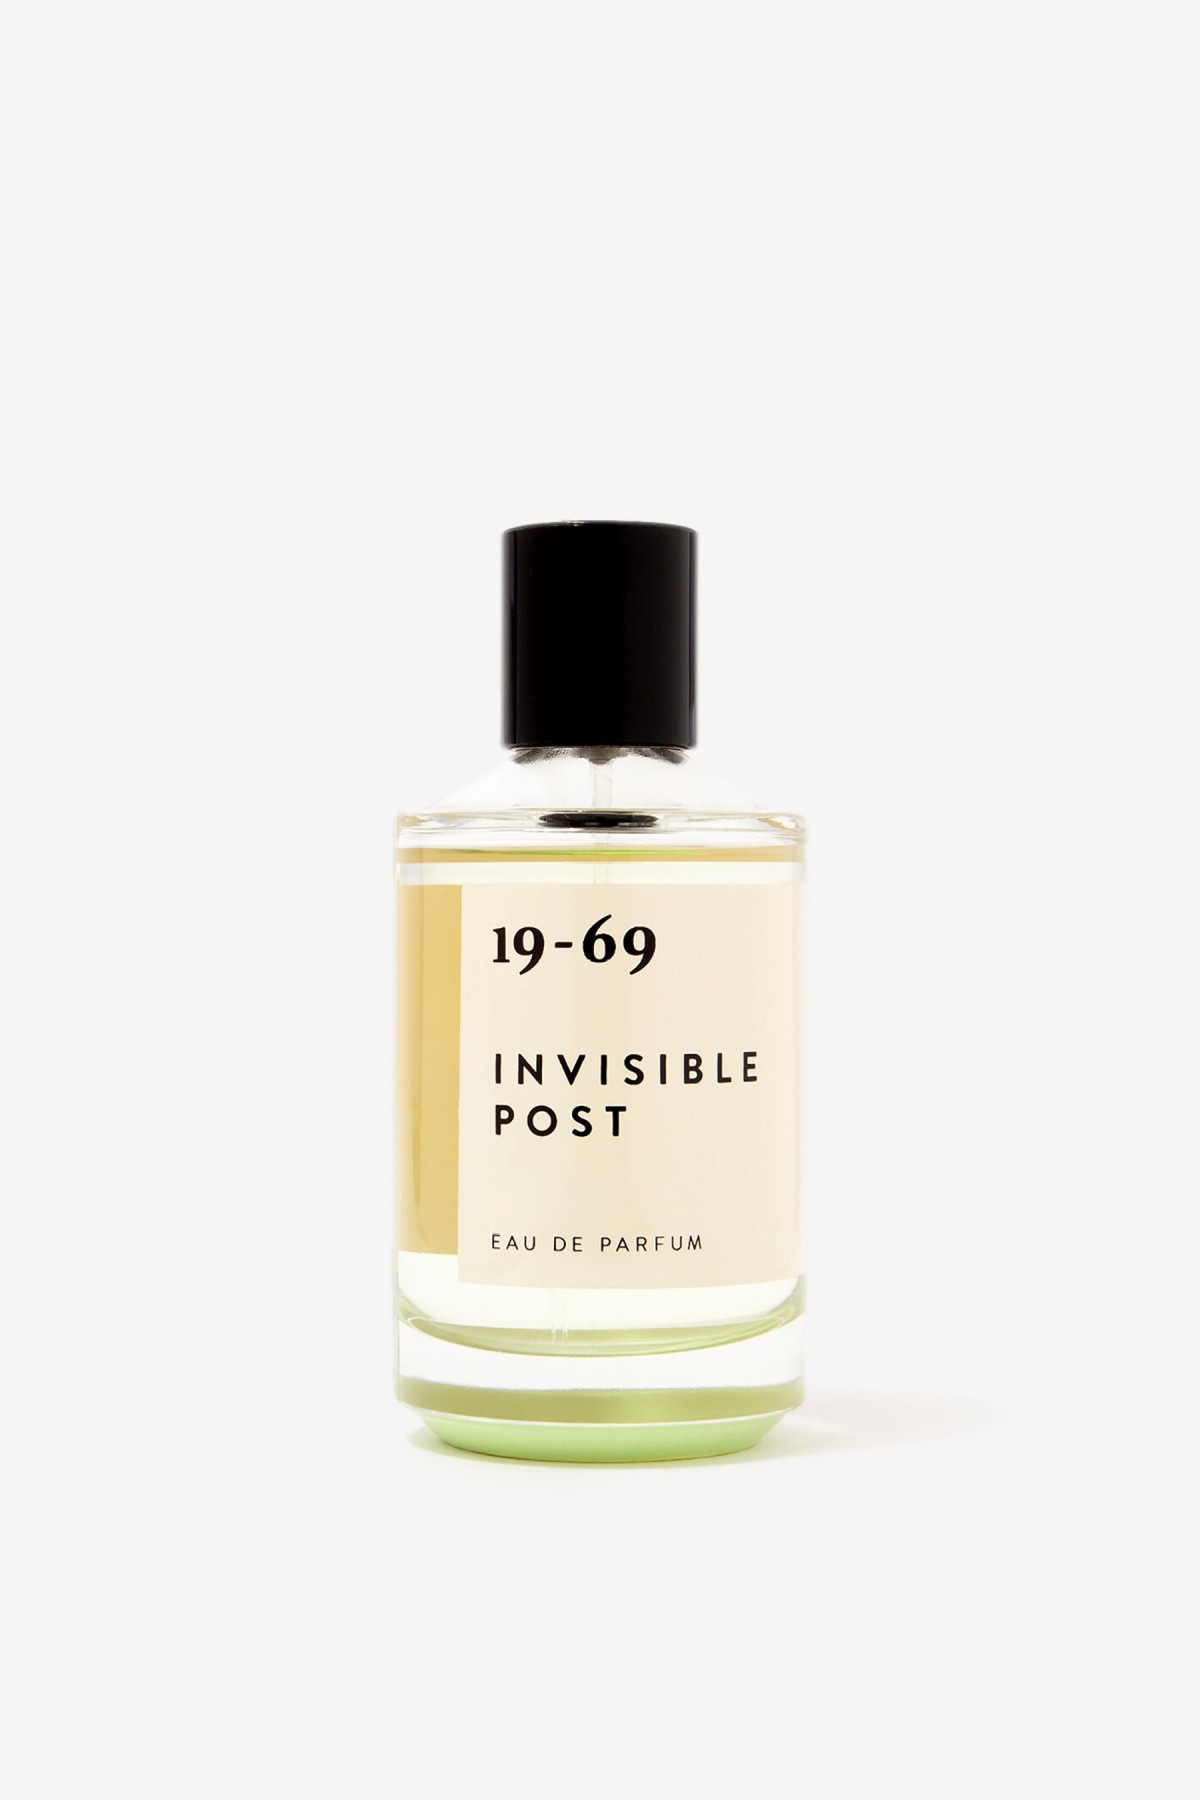 19-69 Invisible Post Eau de Parfum in 100ml